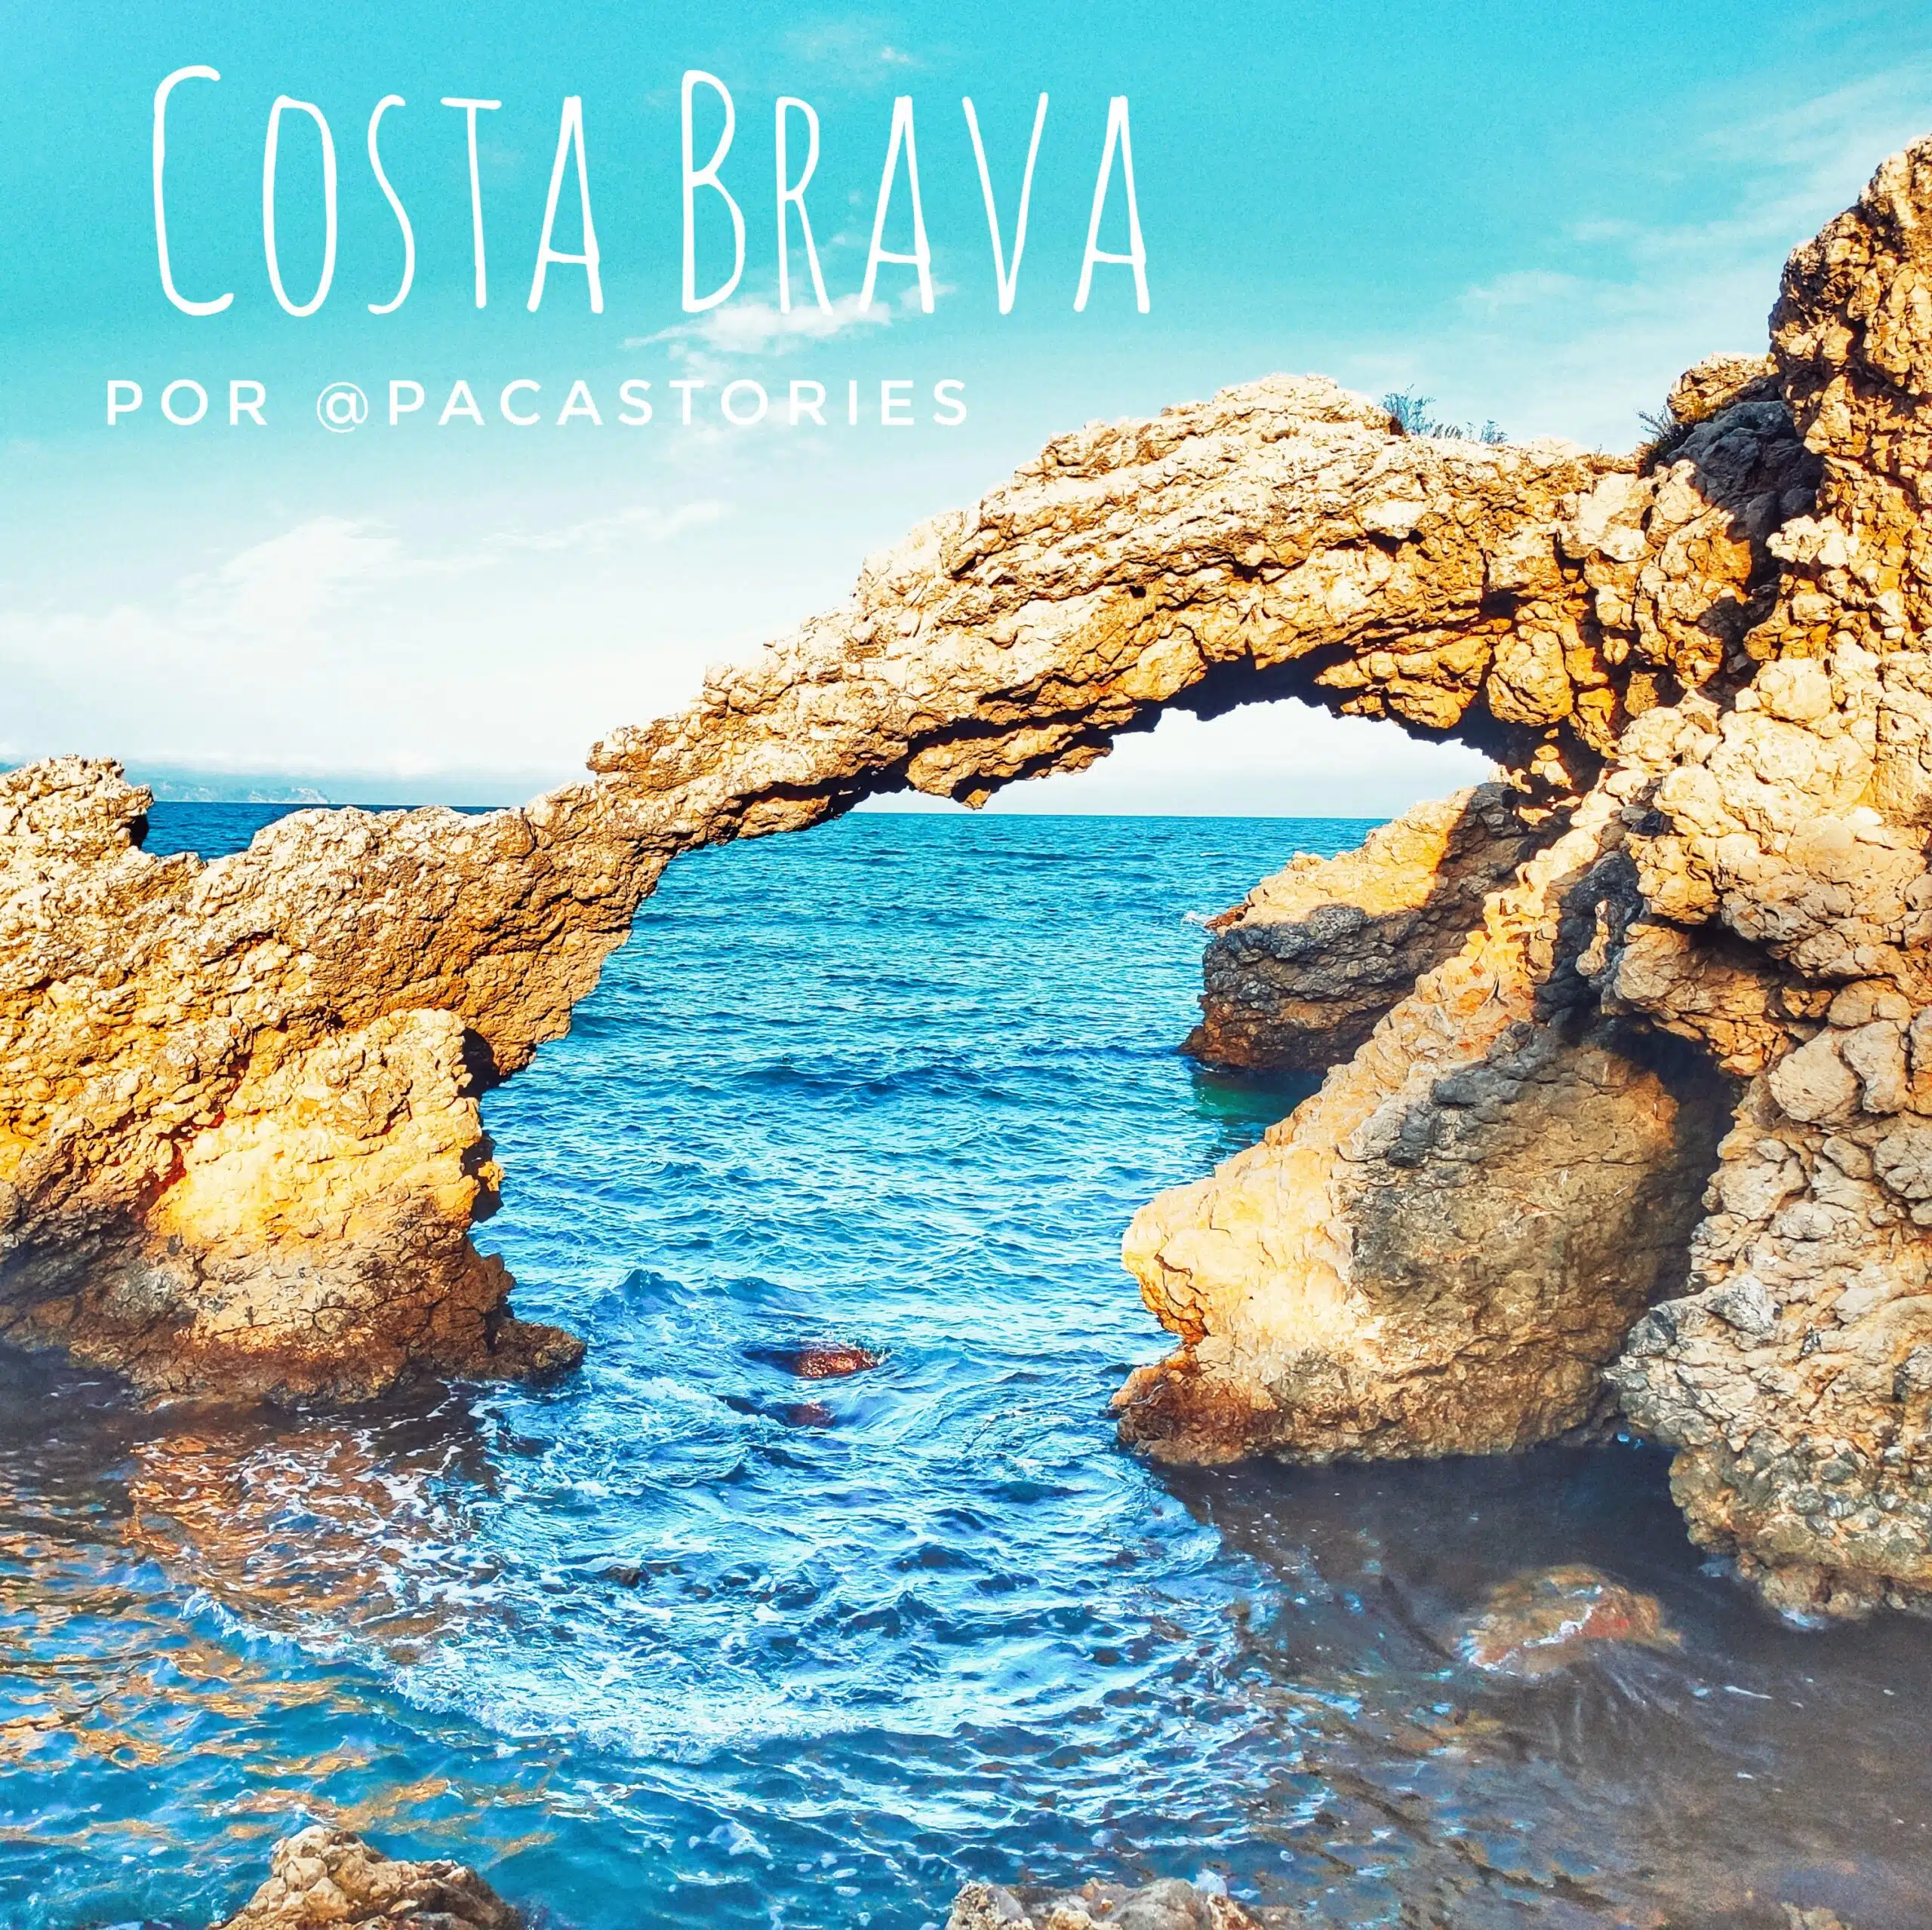 17 destinacions increïbles per descobrir la Costa Brava amb autocaravana